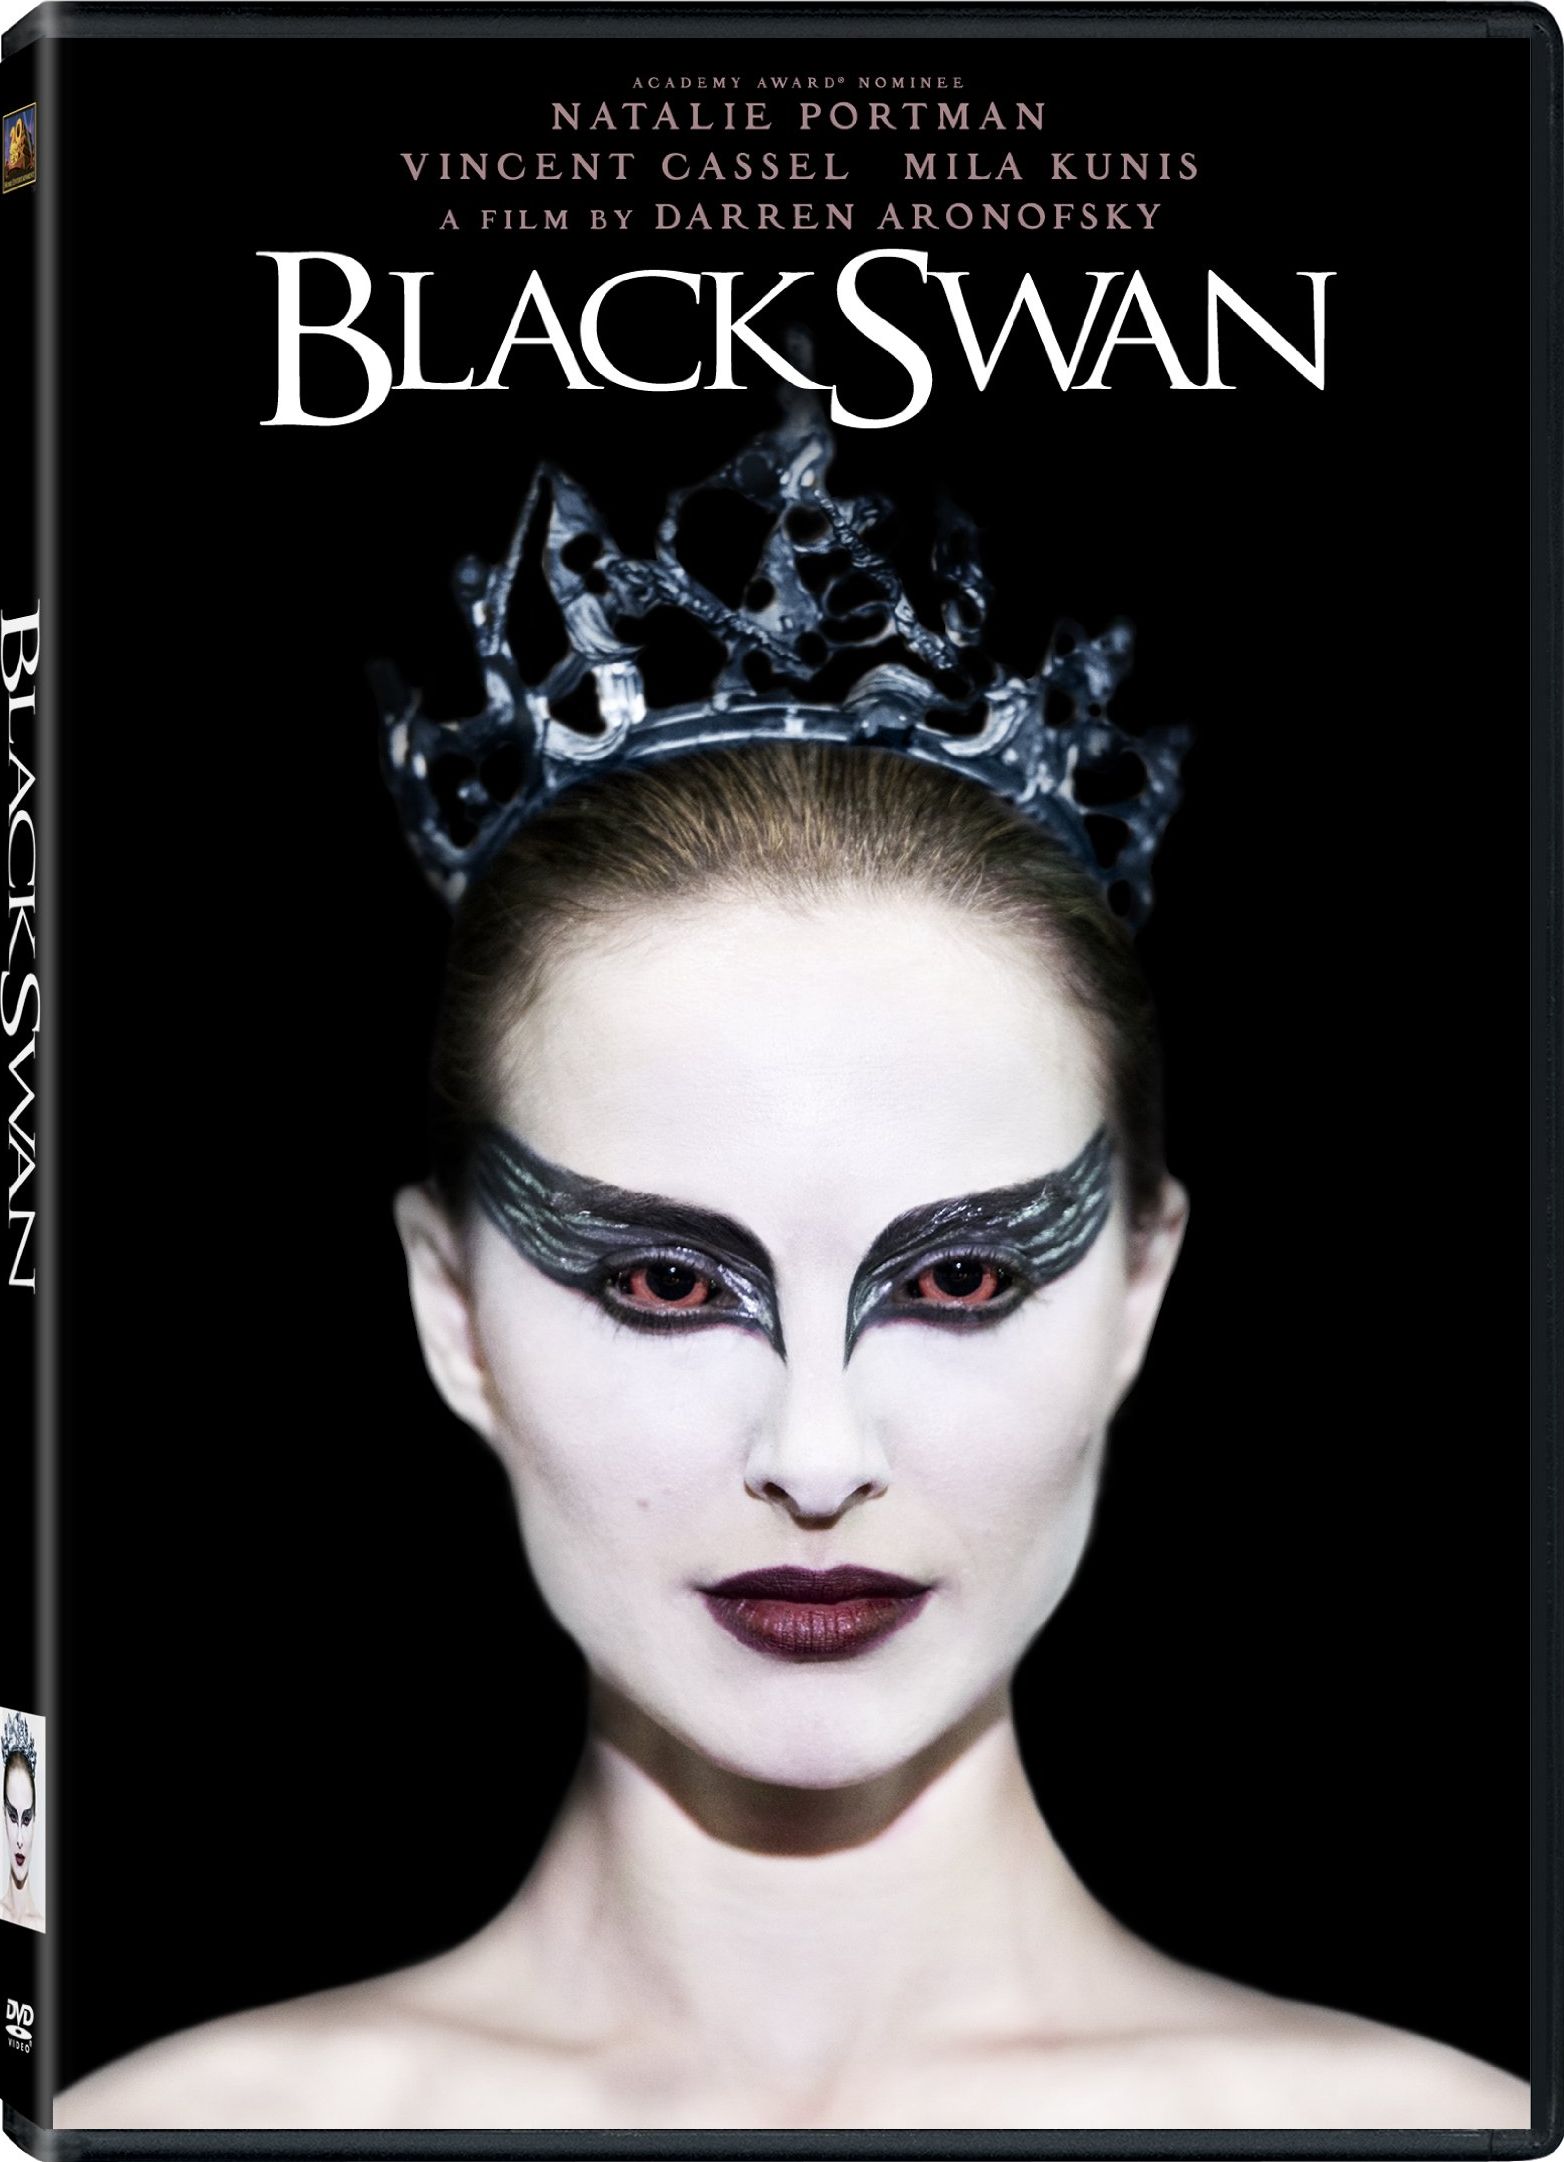 Black Swan Release Date March 29, 2011